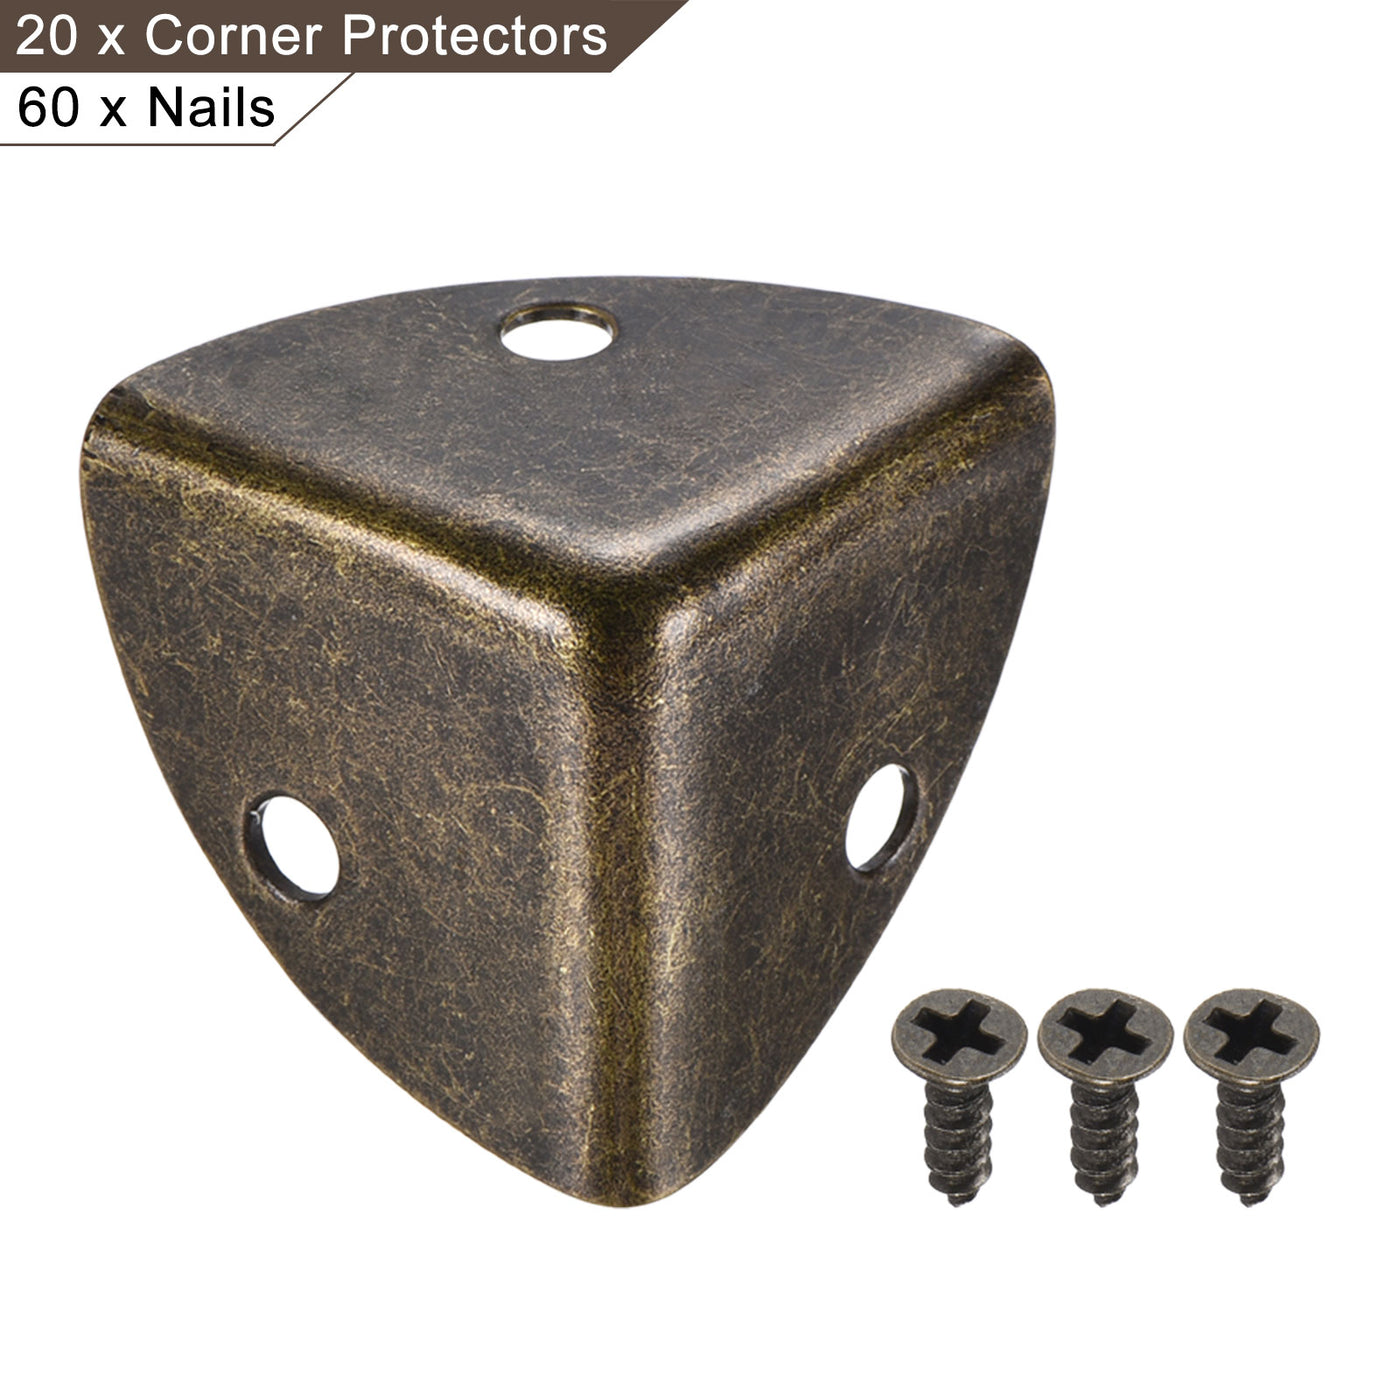 uxcell Uxcell 26x26x26mm Metal Box Corner Protectors Edge Guard Bronze Tone 20pcs